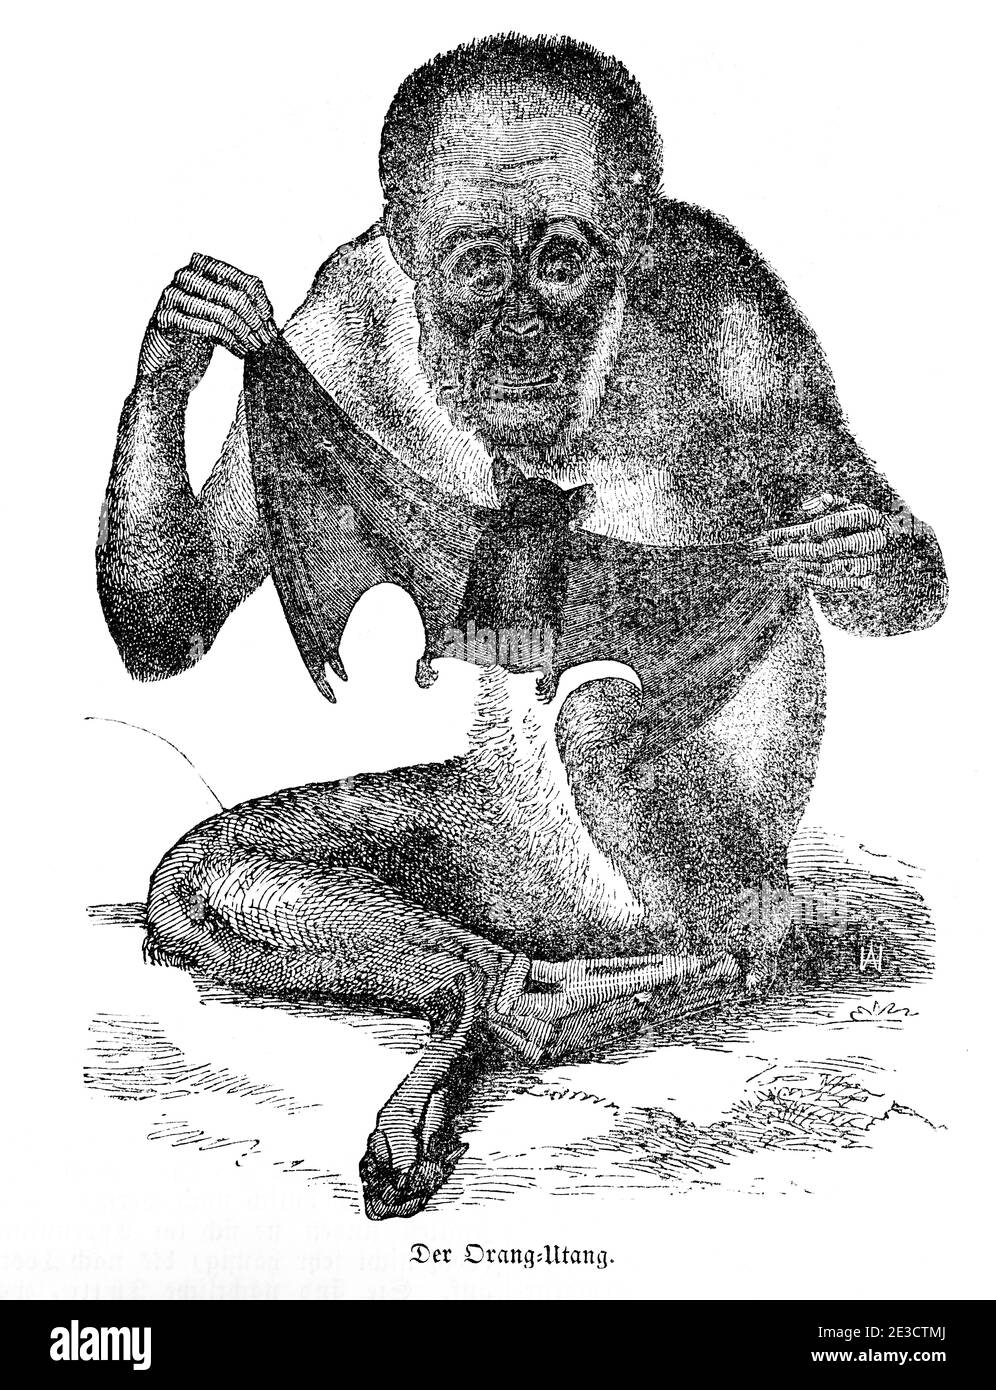 Ritratto di un orang-utan di siting, Calendario Svizzero con storie su animali stranieri e motivi corrispondenti, San Gallo Svizzera 1853 Foto Stock